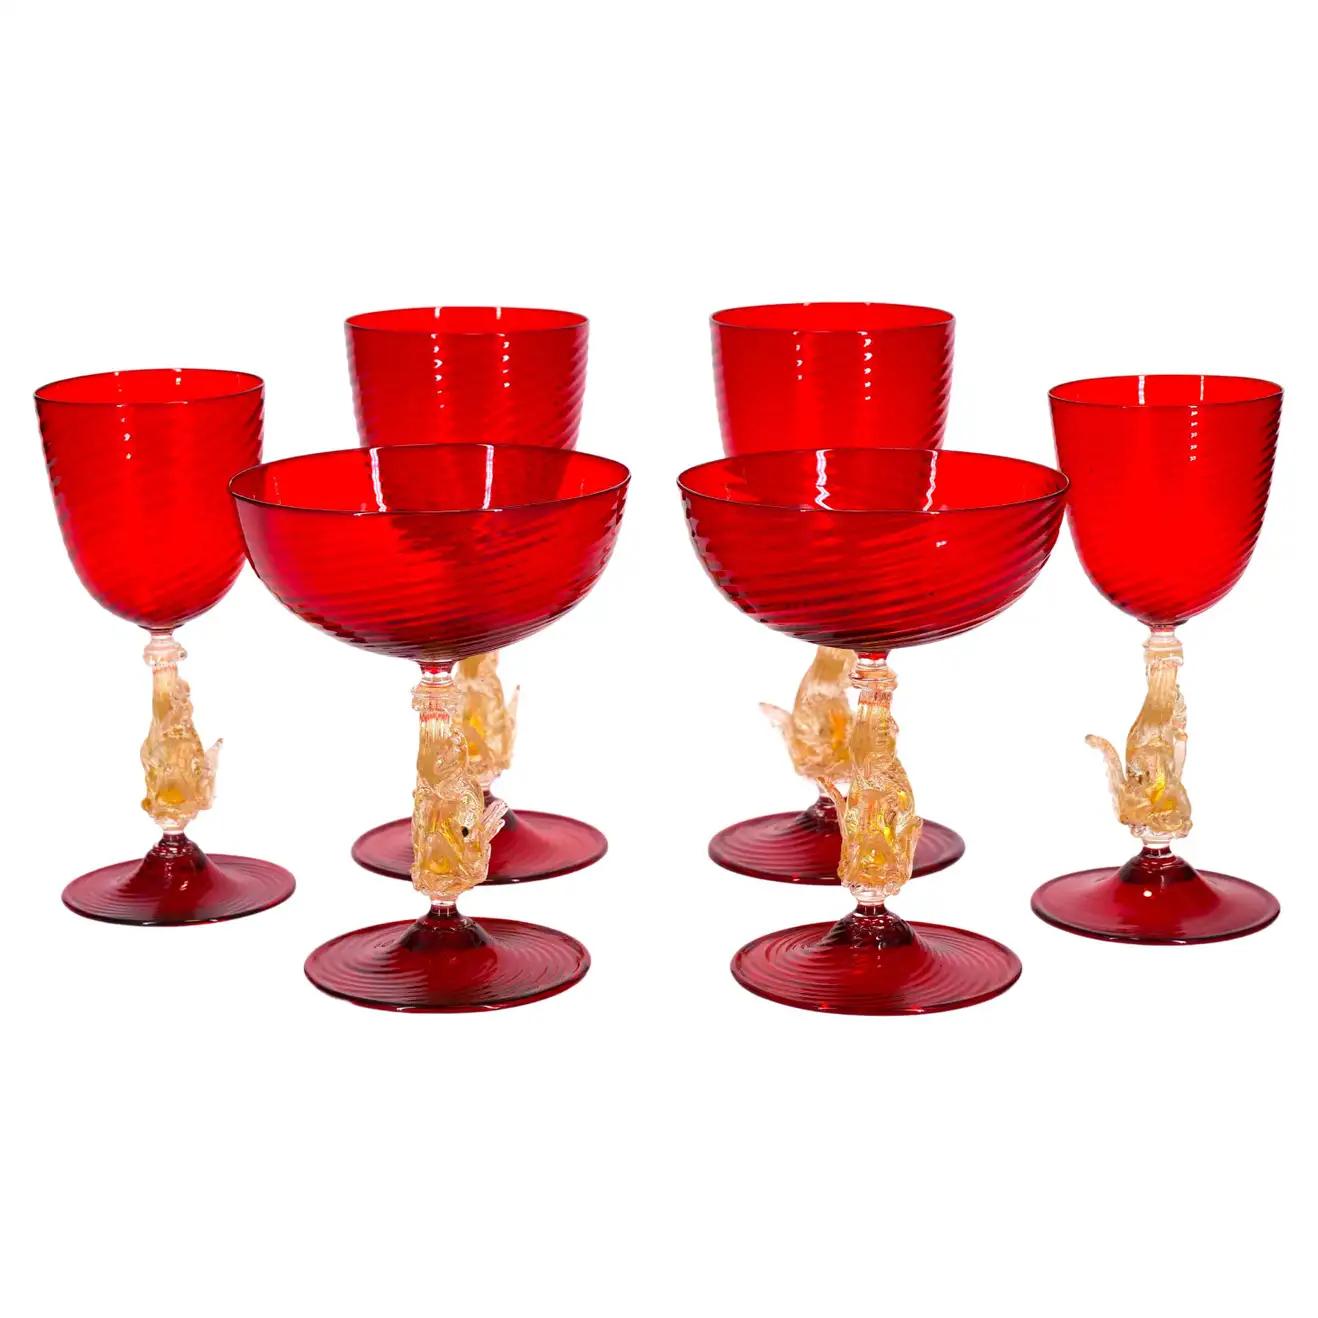 Murano Glass Barware / Tableware Set 5